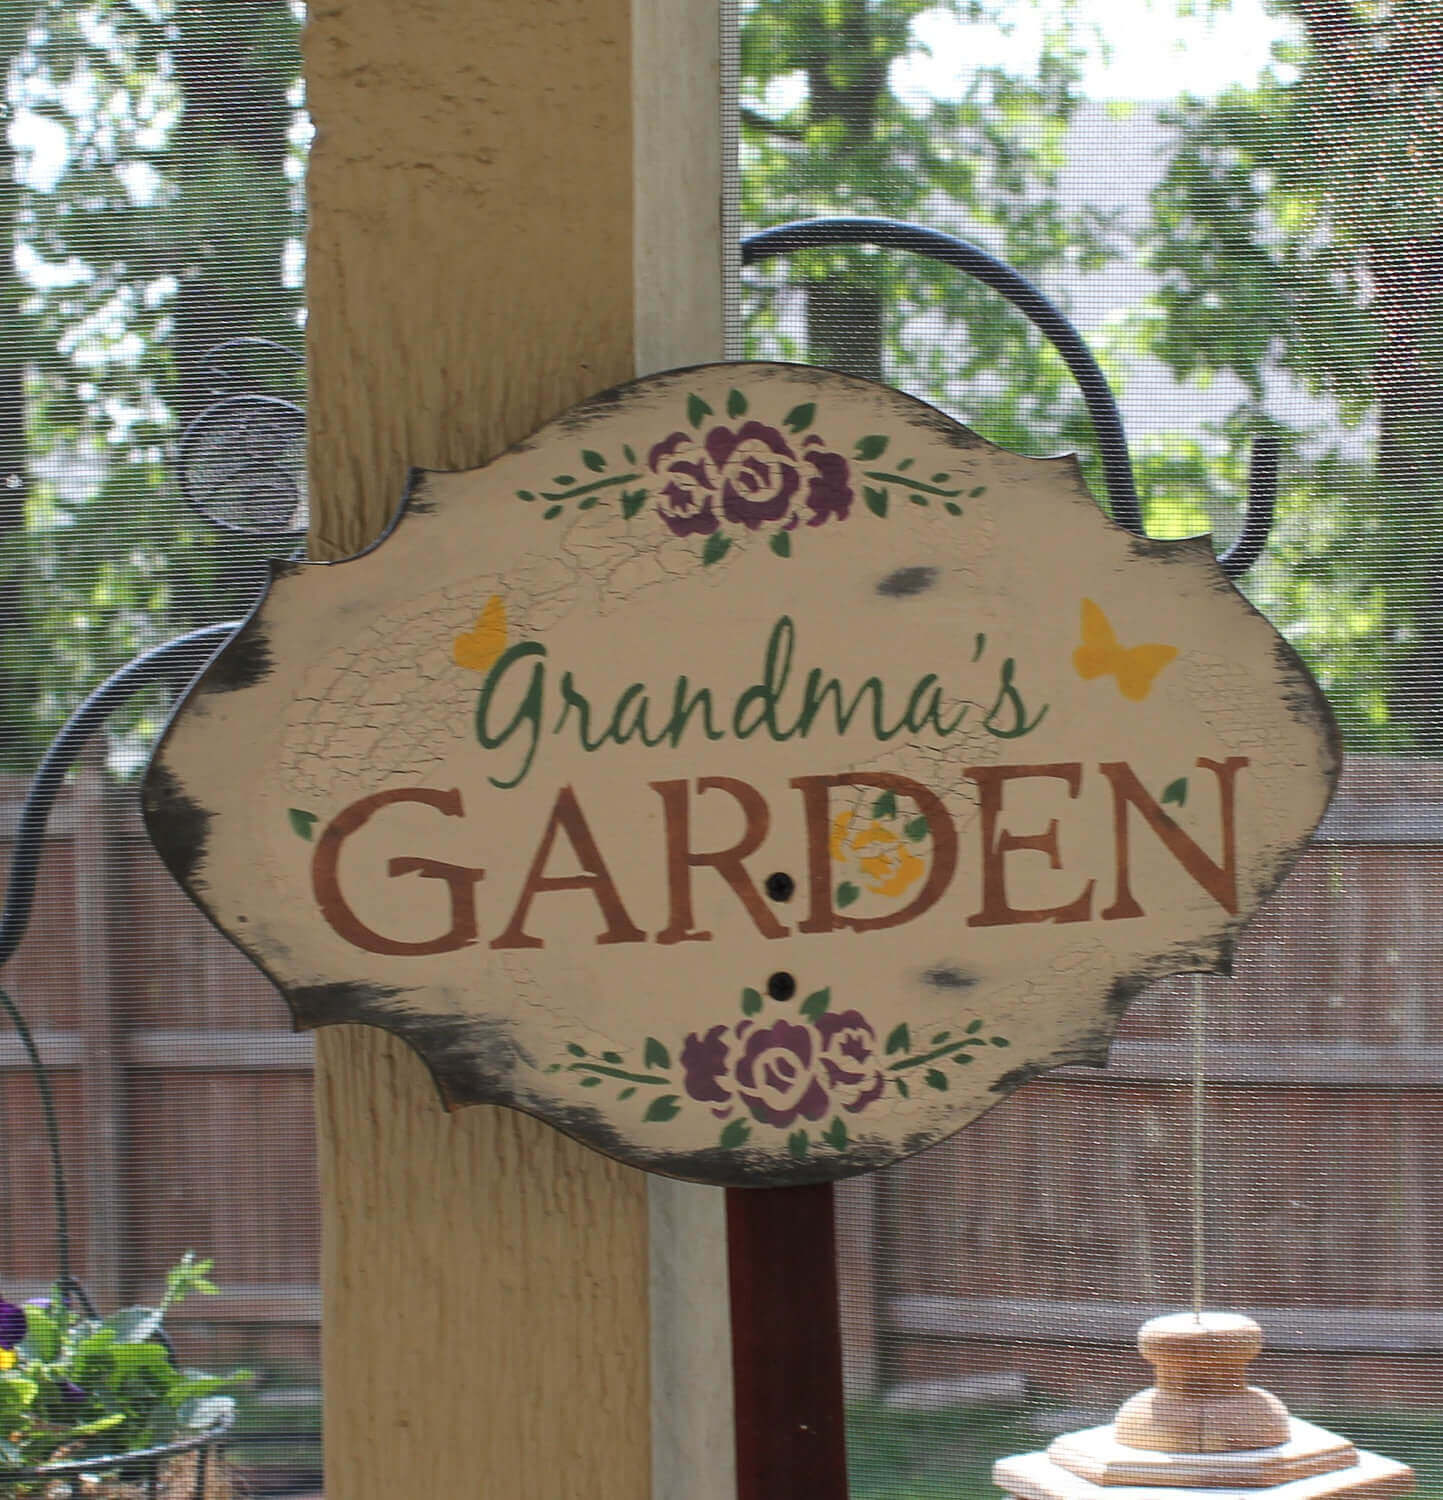 Charming Sign for Grandma’s Garden | Funny DIY Garden Sign Ideas